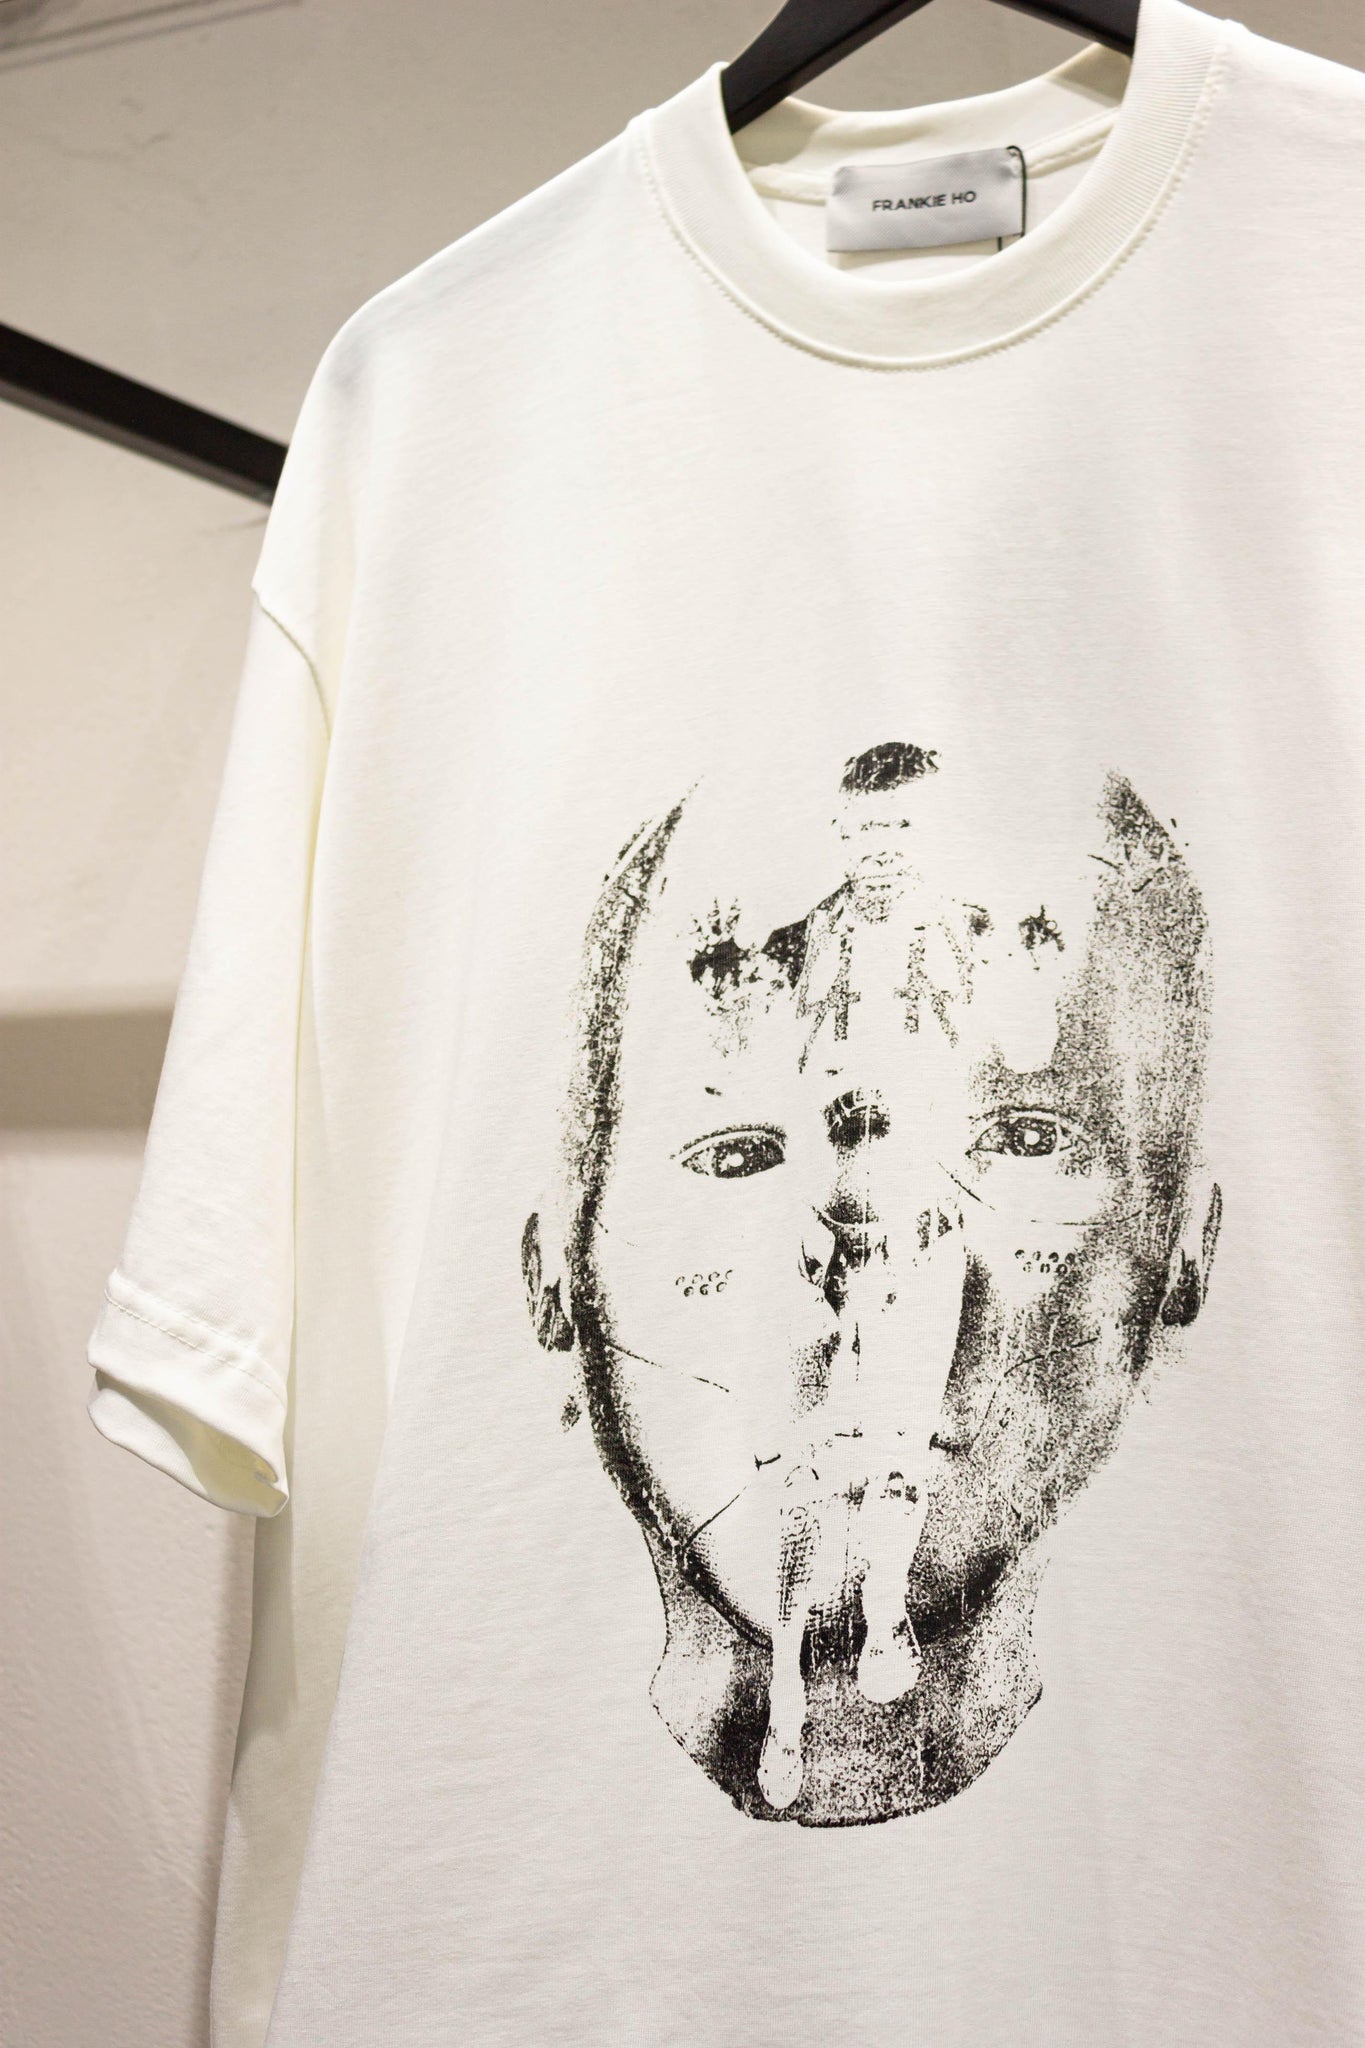 T-shirt face print - FRANKIE HO